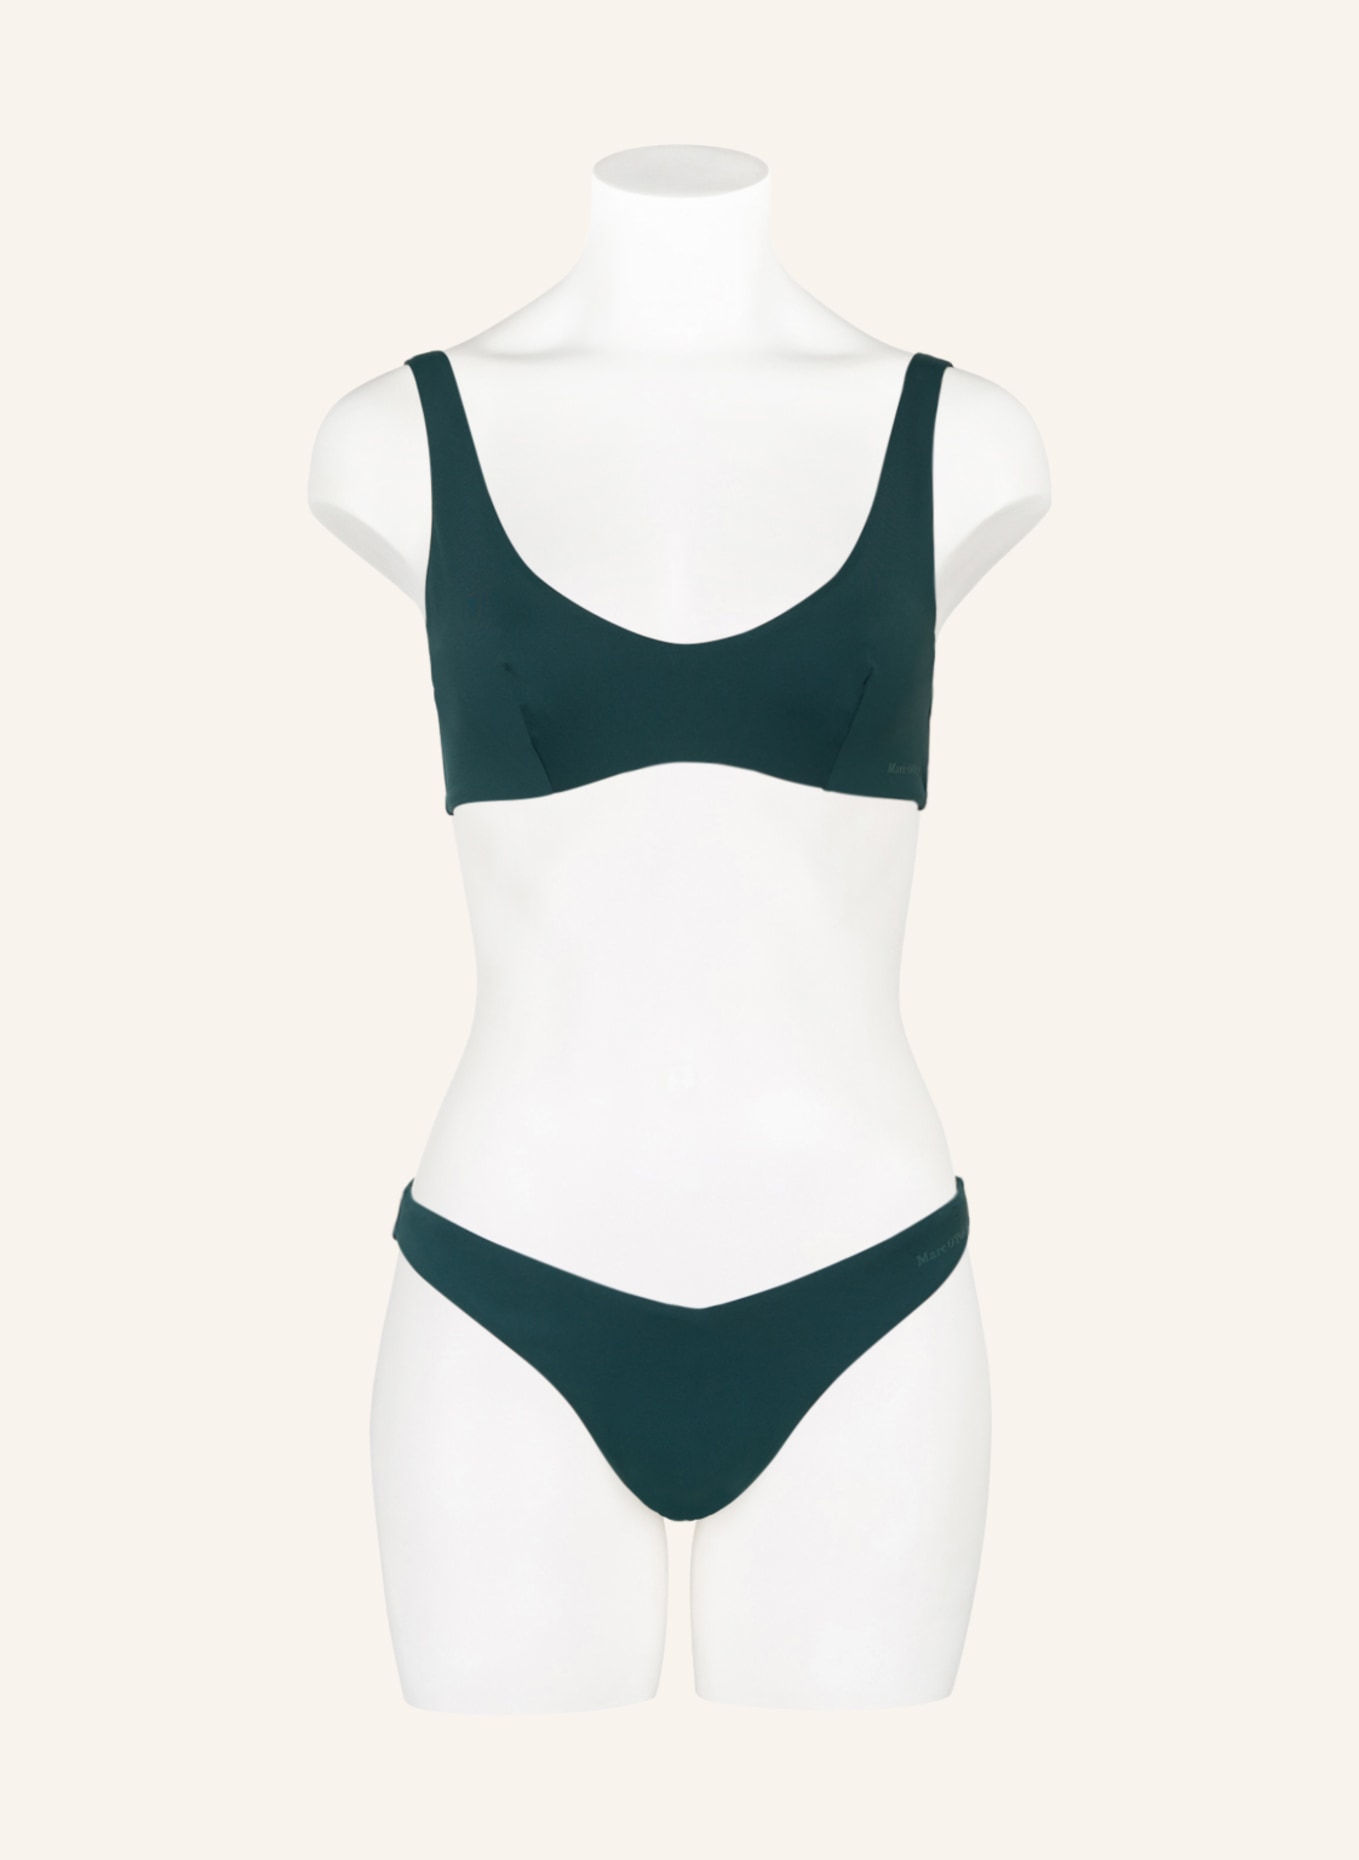 Marc O'Polo Brazilian bikini bottoms with UV protection, Color: OLIVE (Image 2)